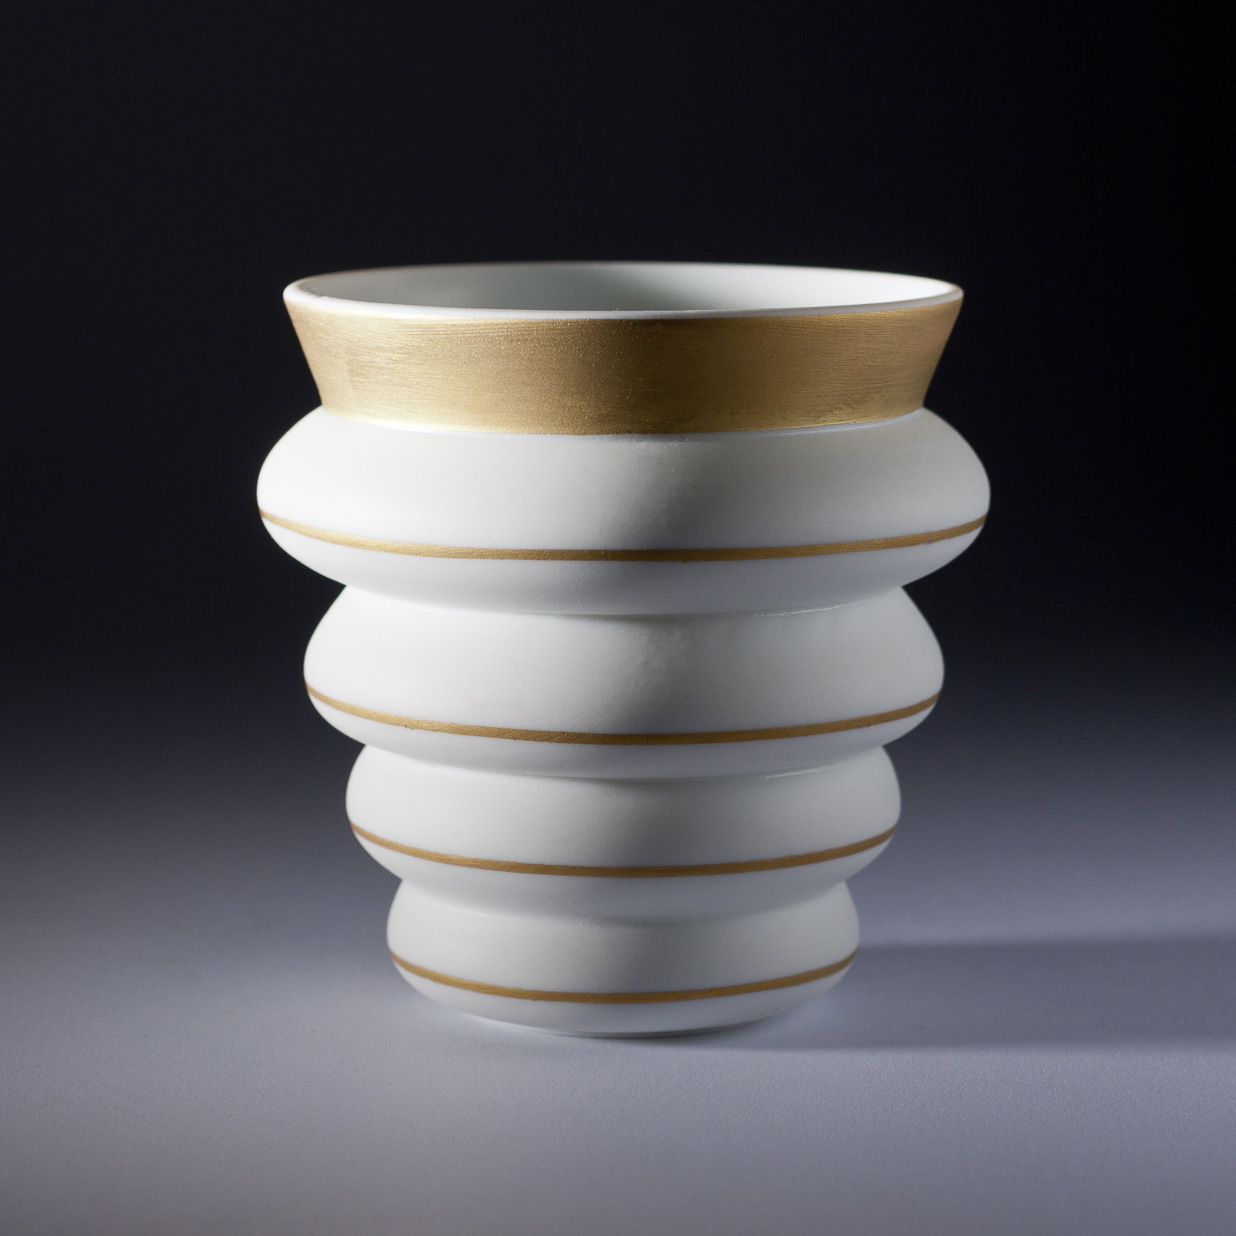 Histoire et fabrication de la porcelaine de Limoges — Esprit